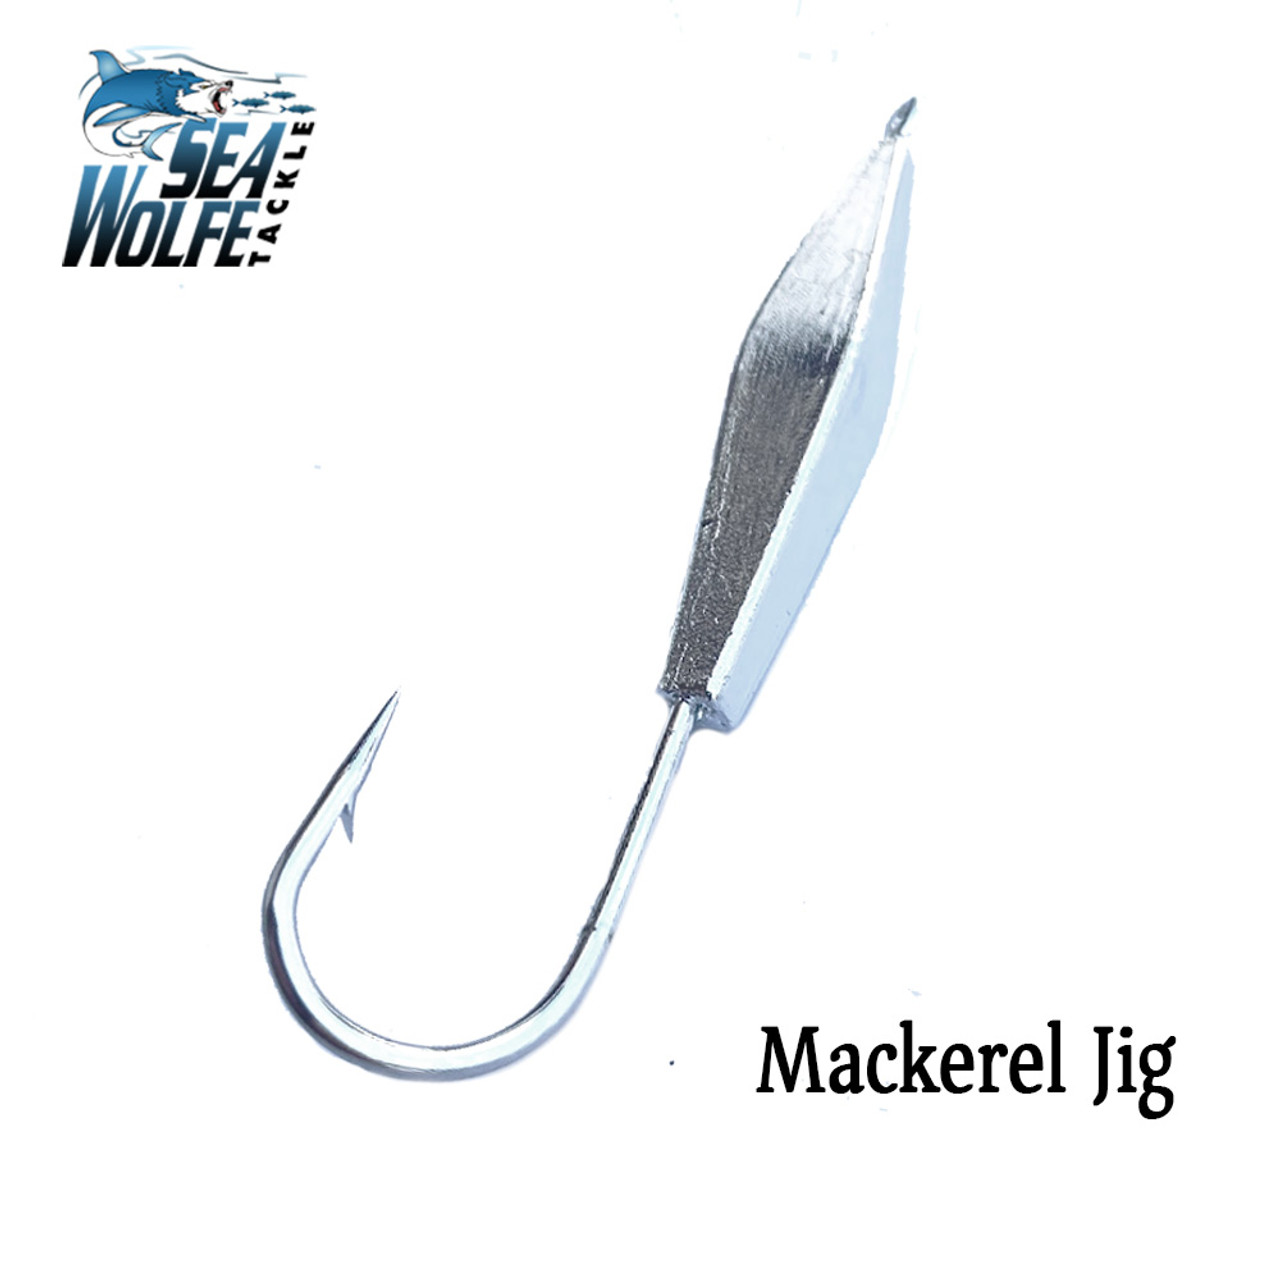 SeaWolfe Mackerel Jigs